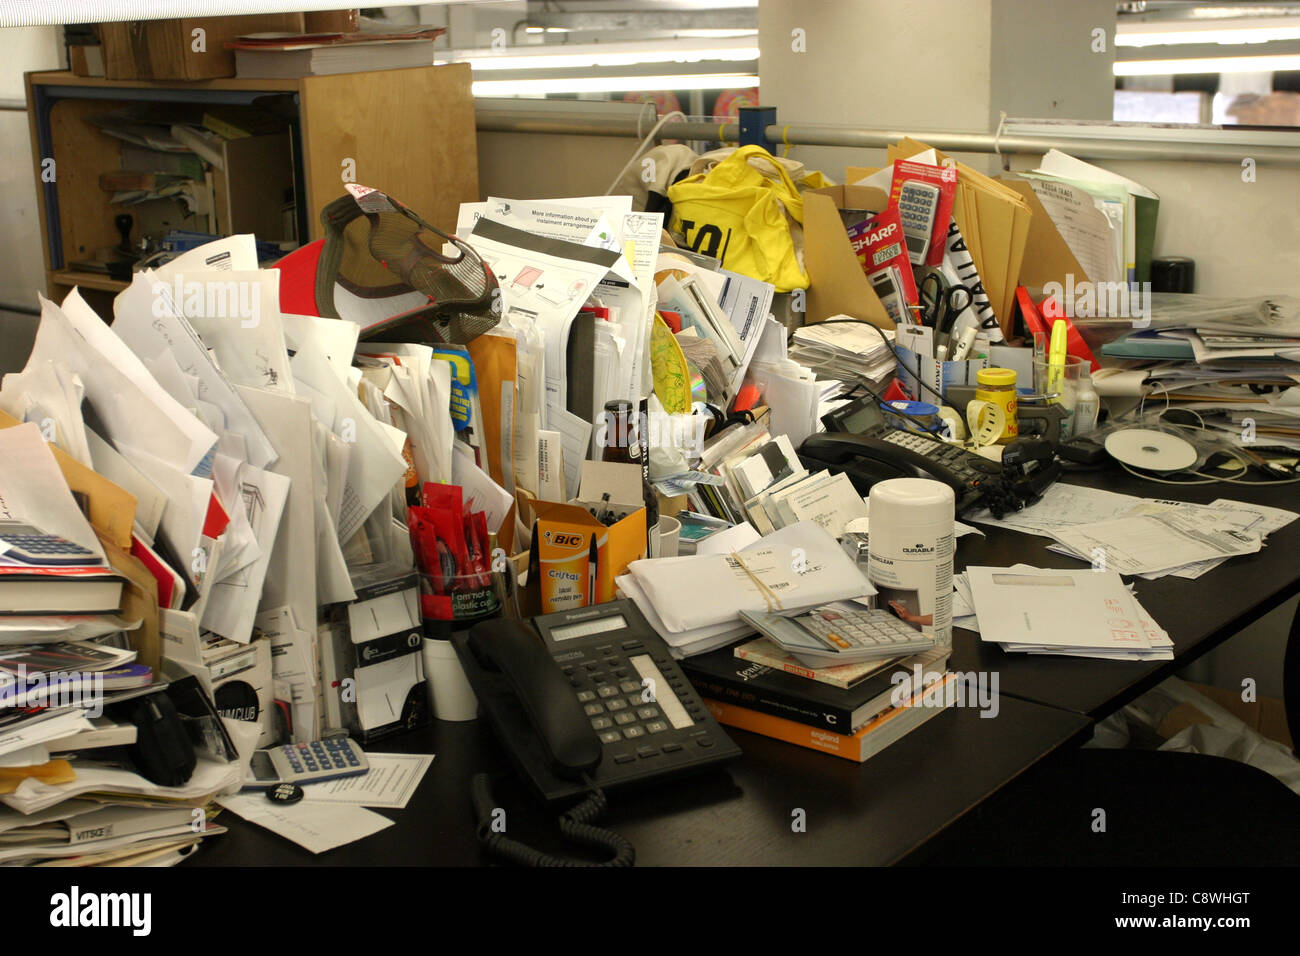 Espacio de trabajo desordenado Foto de stock